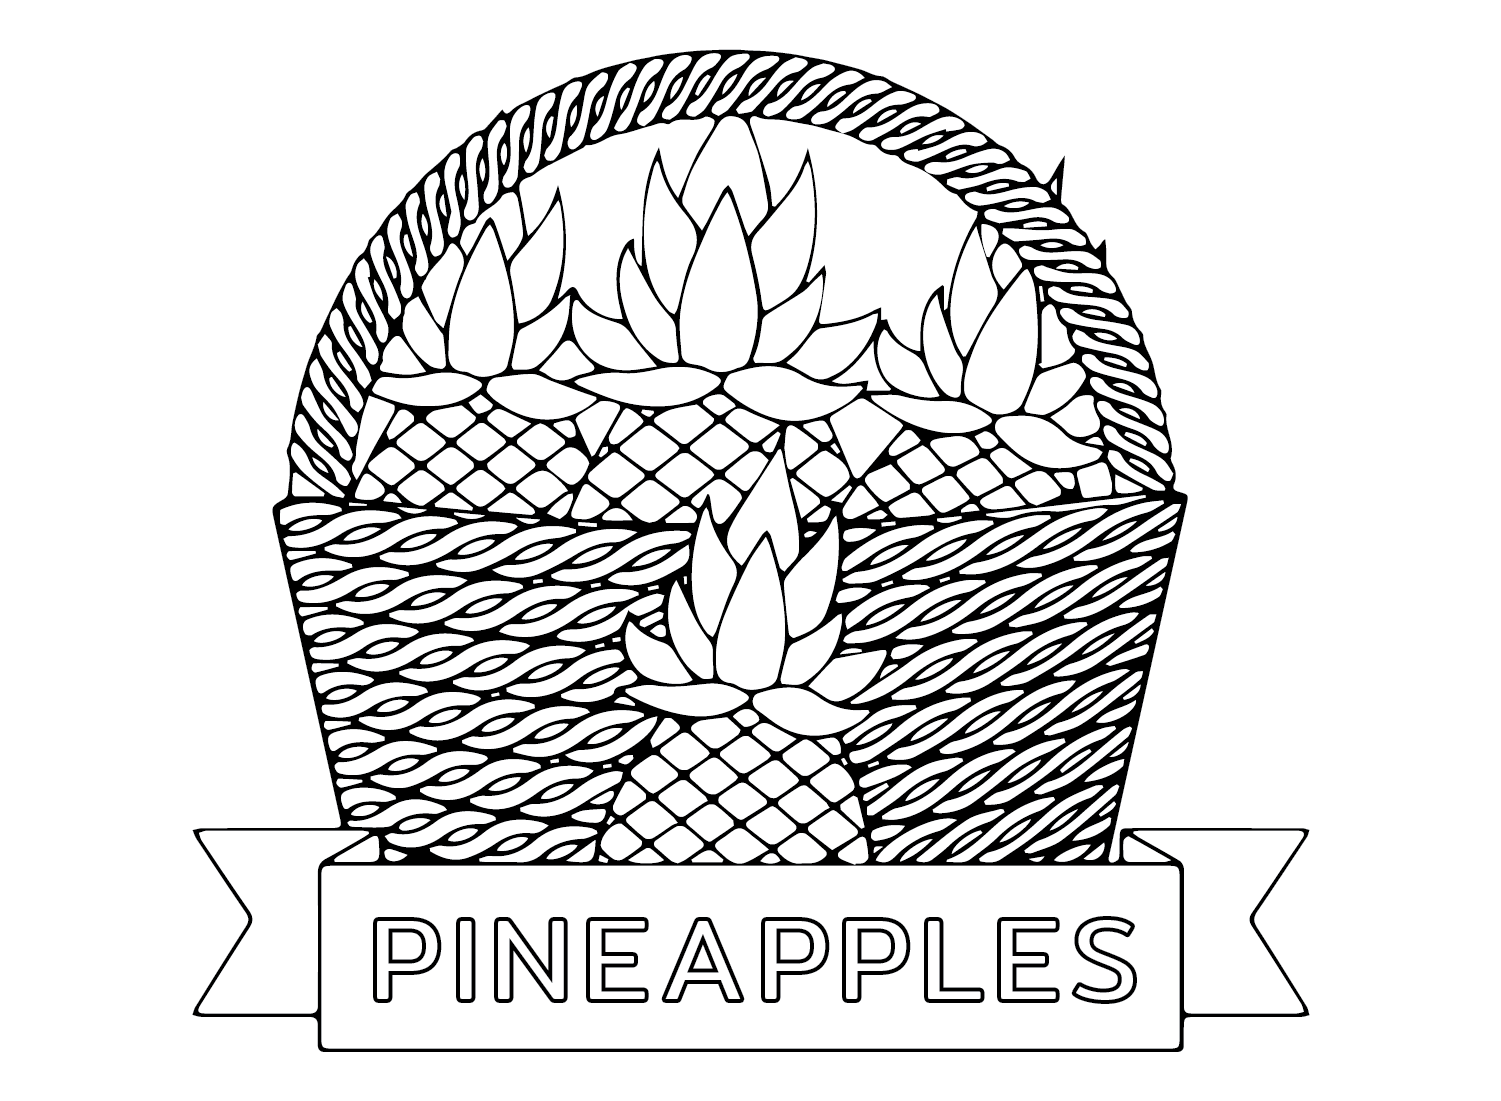 Ananaskorb von Pineapples